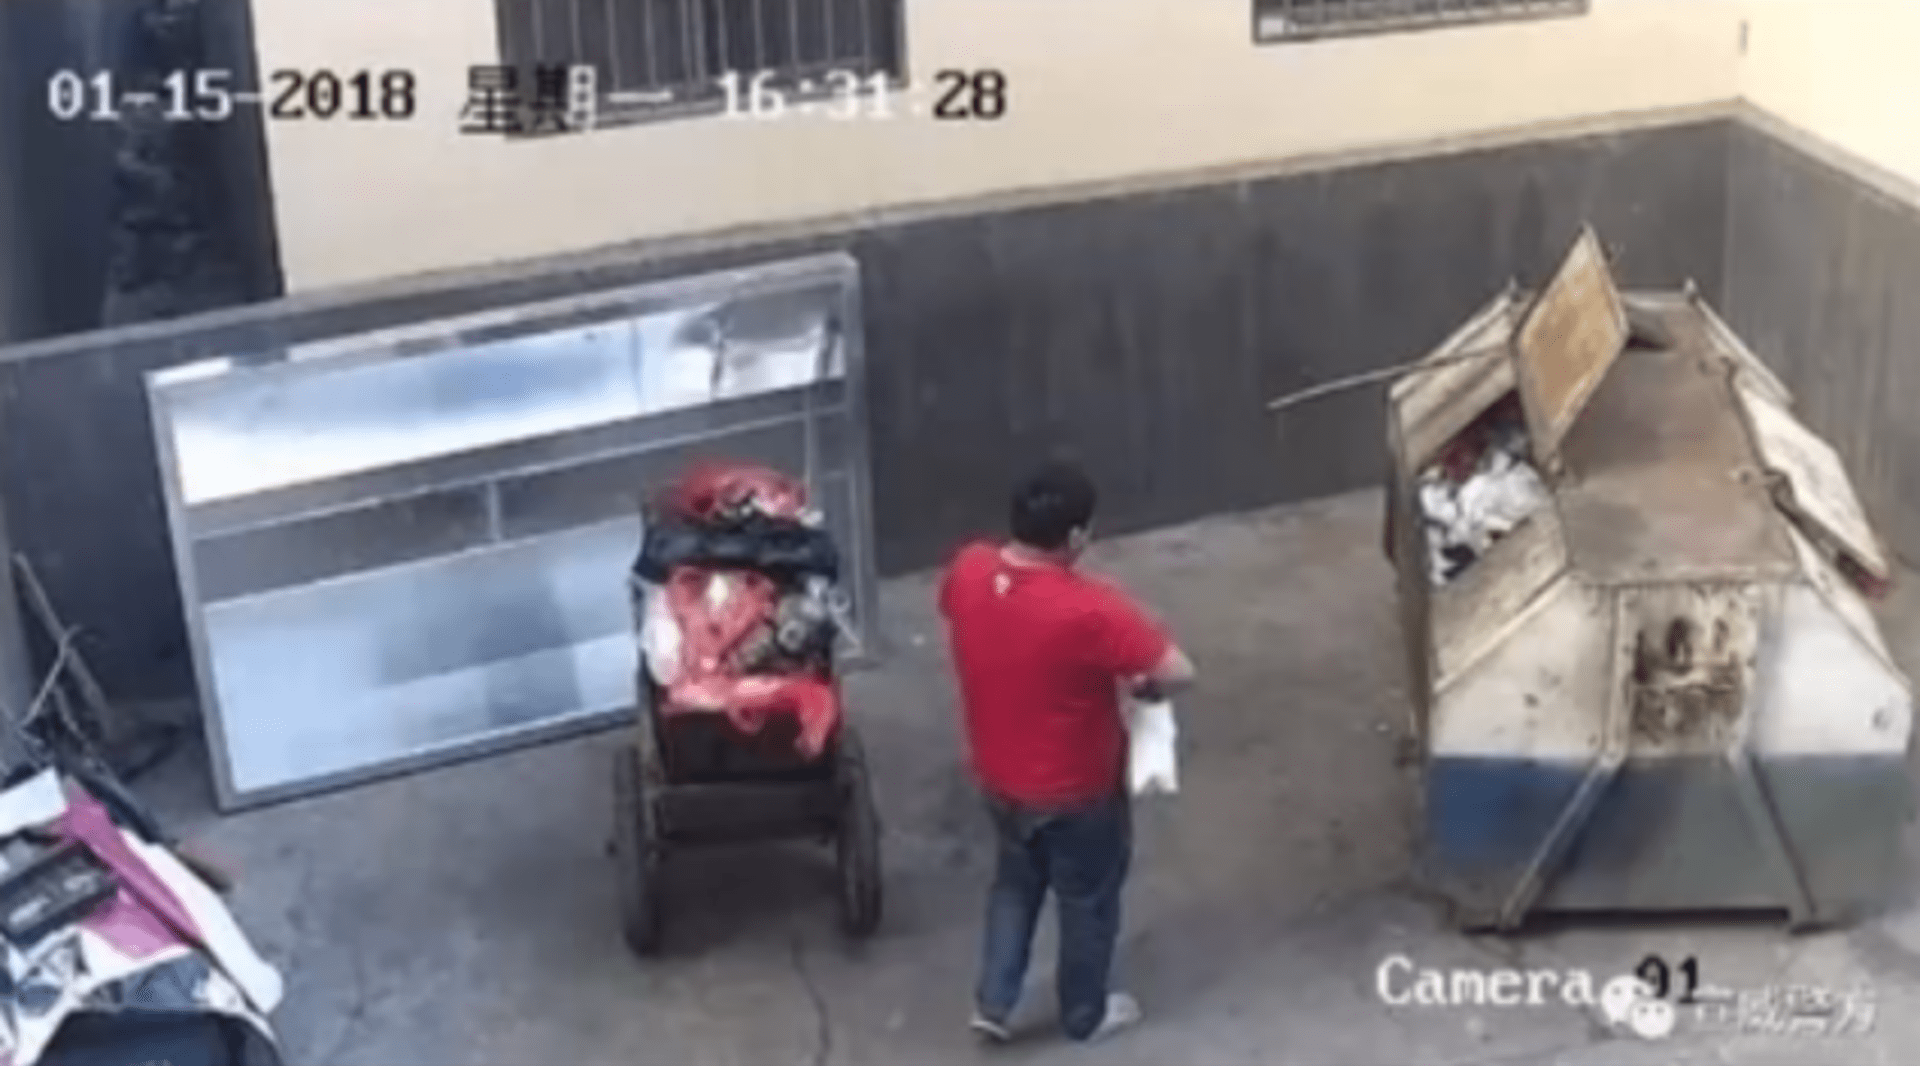 Otec zahodil novorozeně do kontejneru, kolemjdoucí ho zachránila